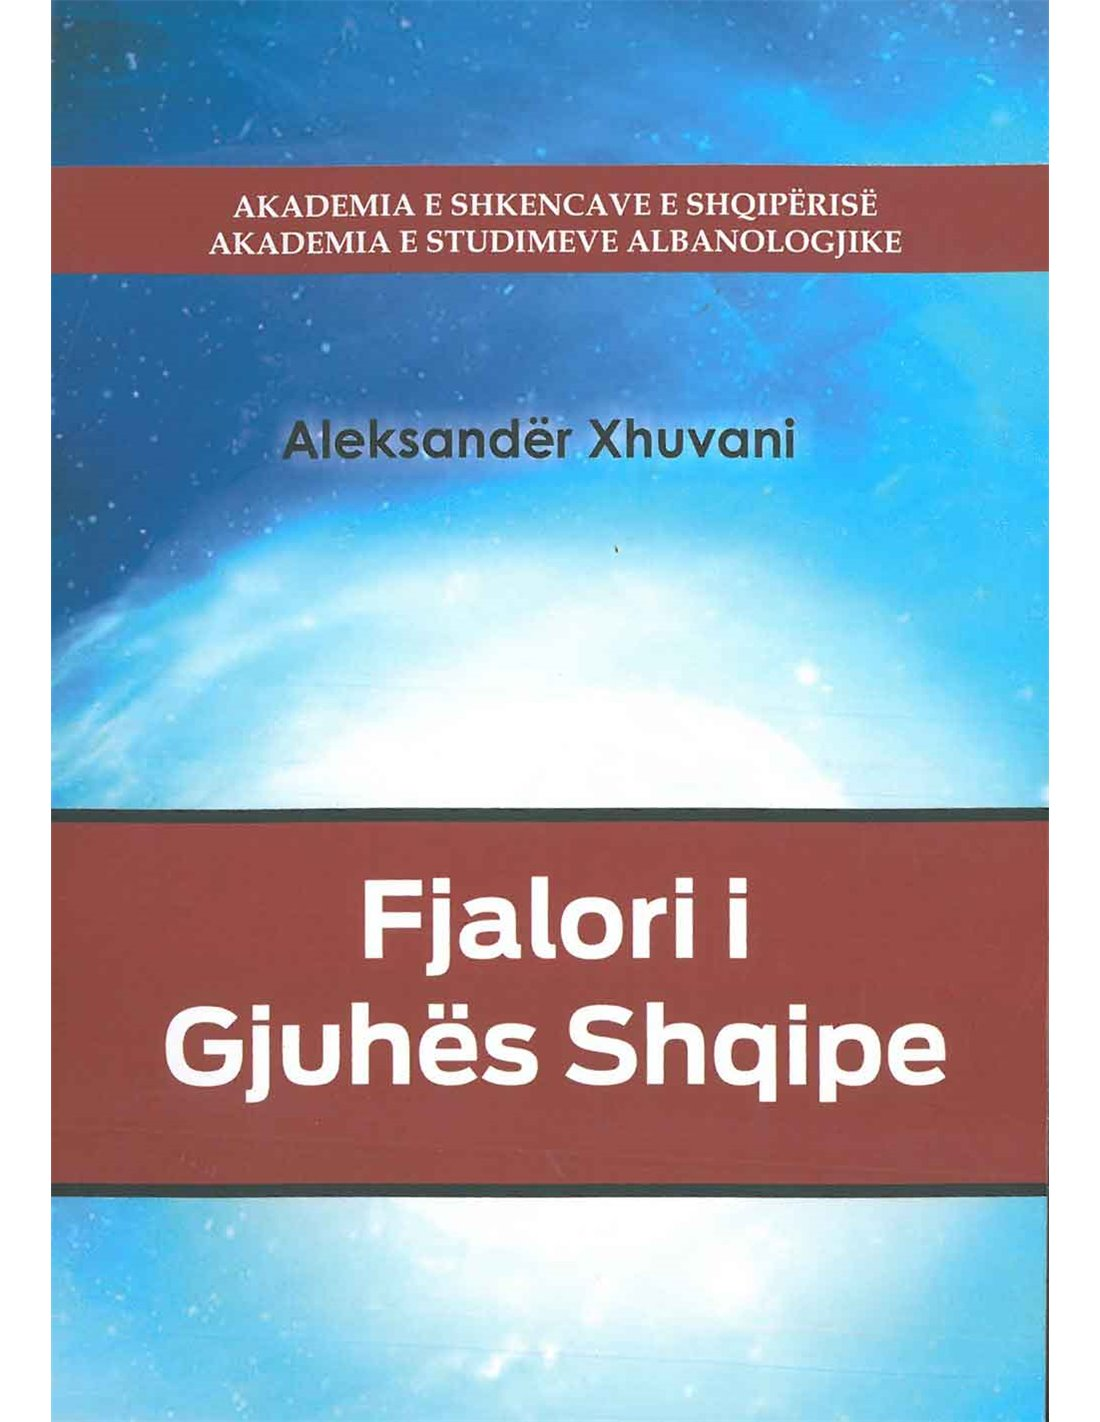 Fjalori i gjuhës shqipe – A. Xh